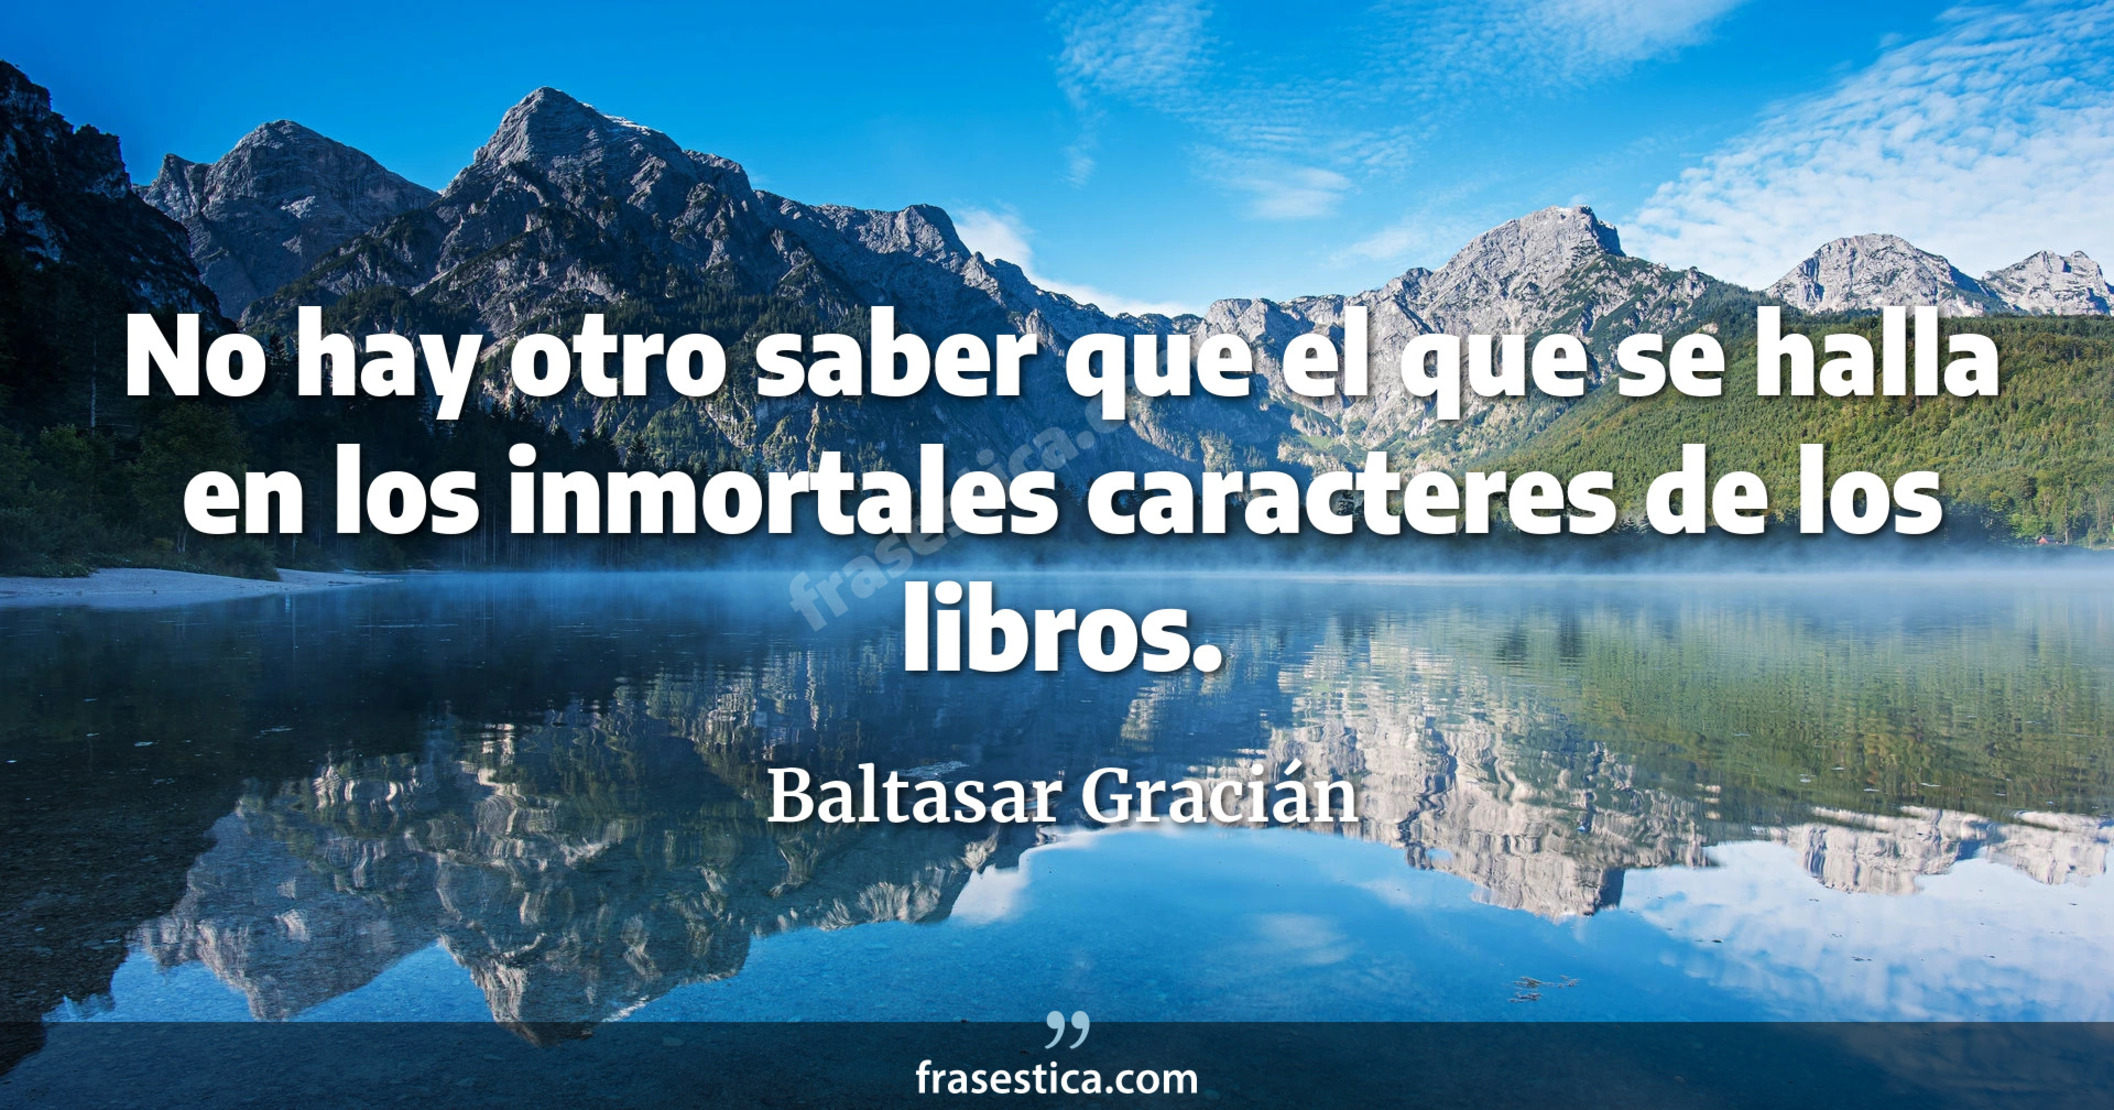 No hay otro saber que el que se halla en los inmortales caracteres de los libros. - Baltasar Gracián